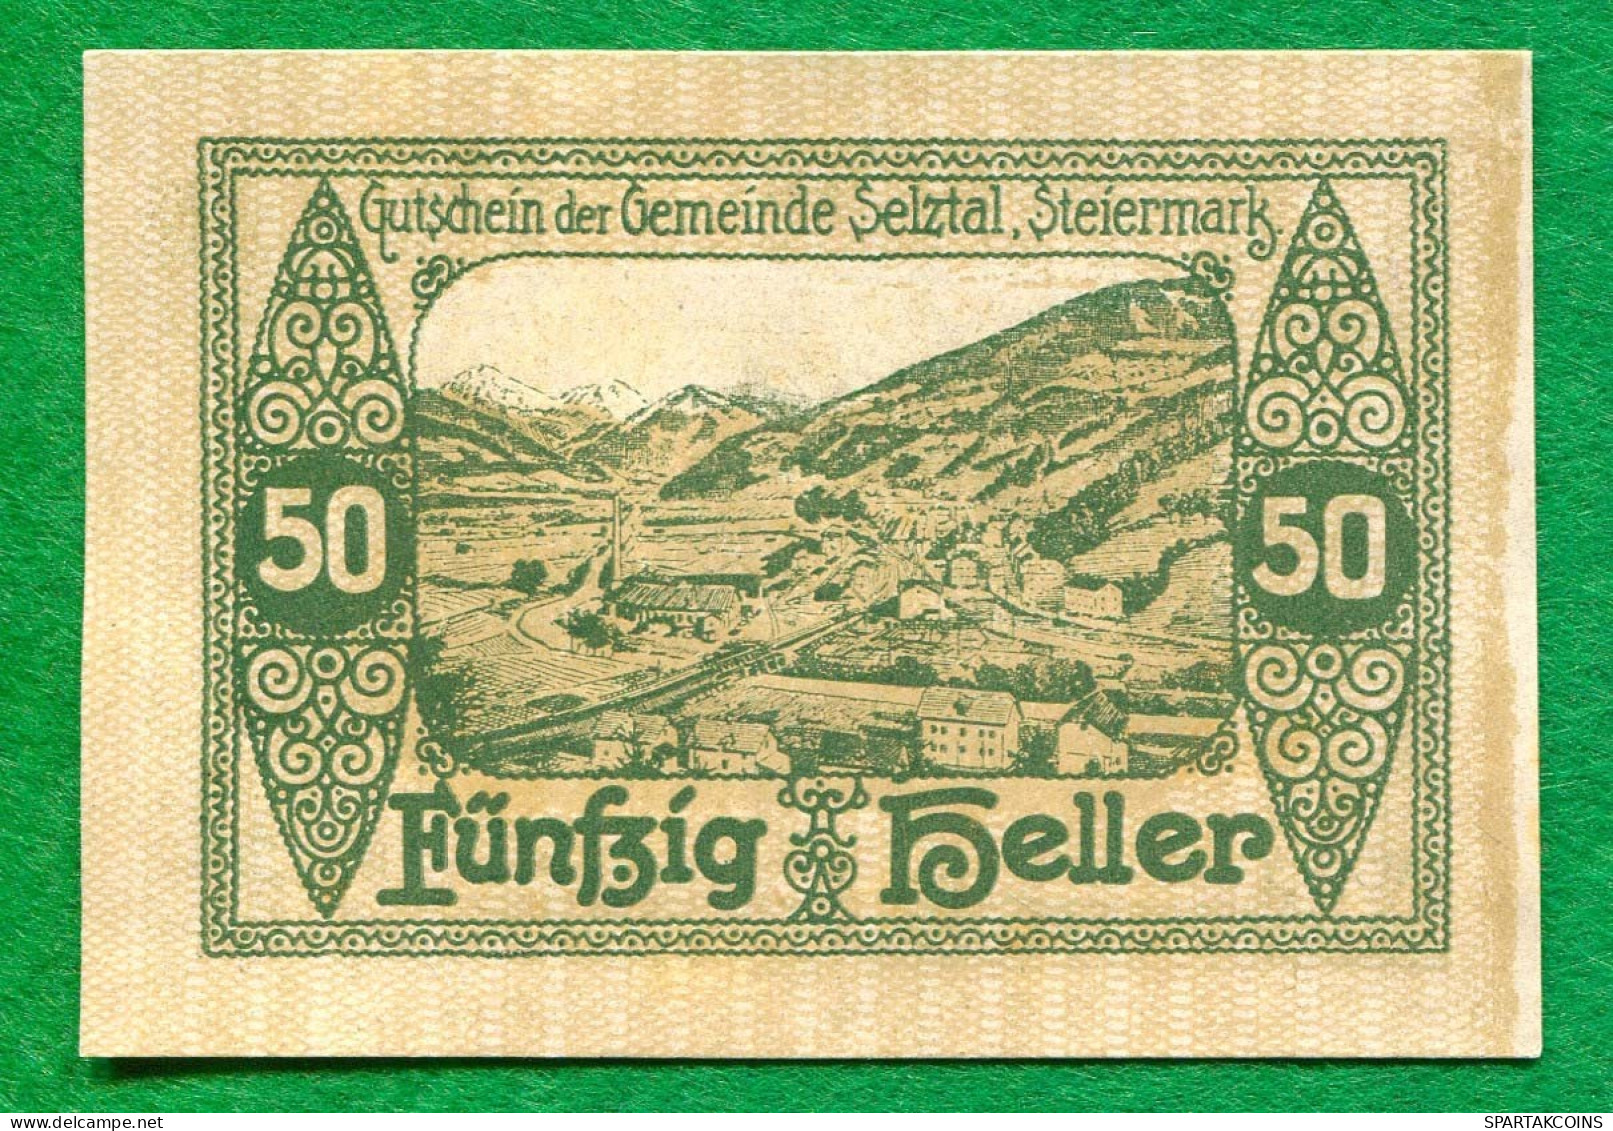 50 Heller 1920 SELZTA Österreich UNC Notgeld Papiergeld Banknote #P10511 - [11] Local Banknote Issues